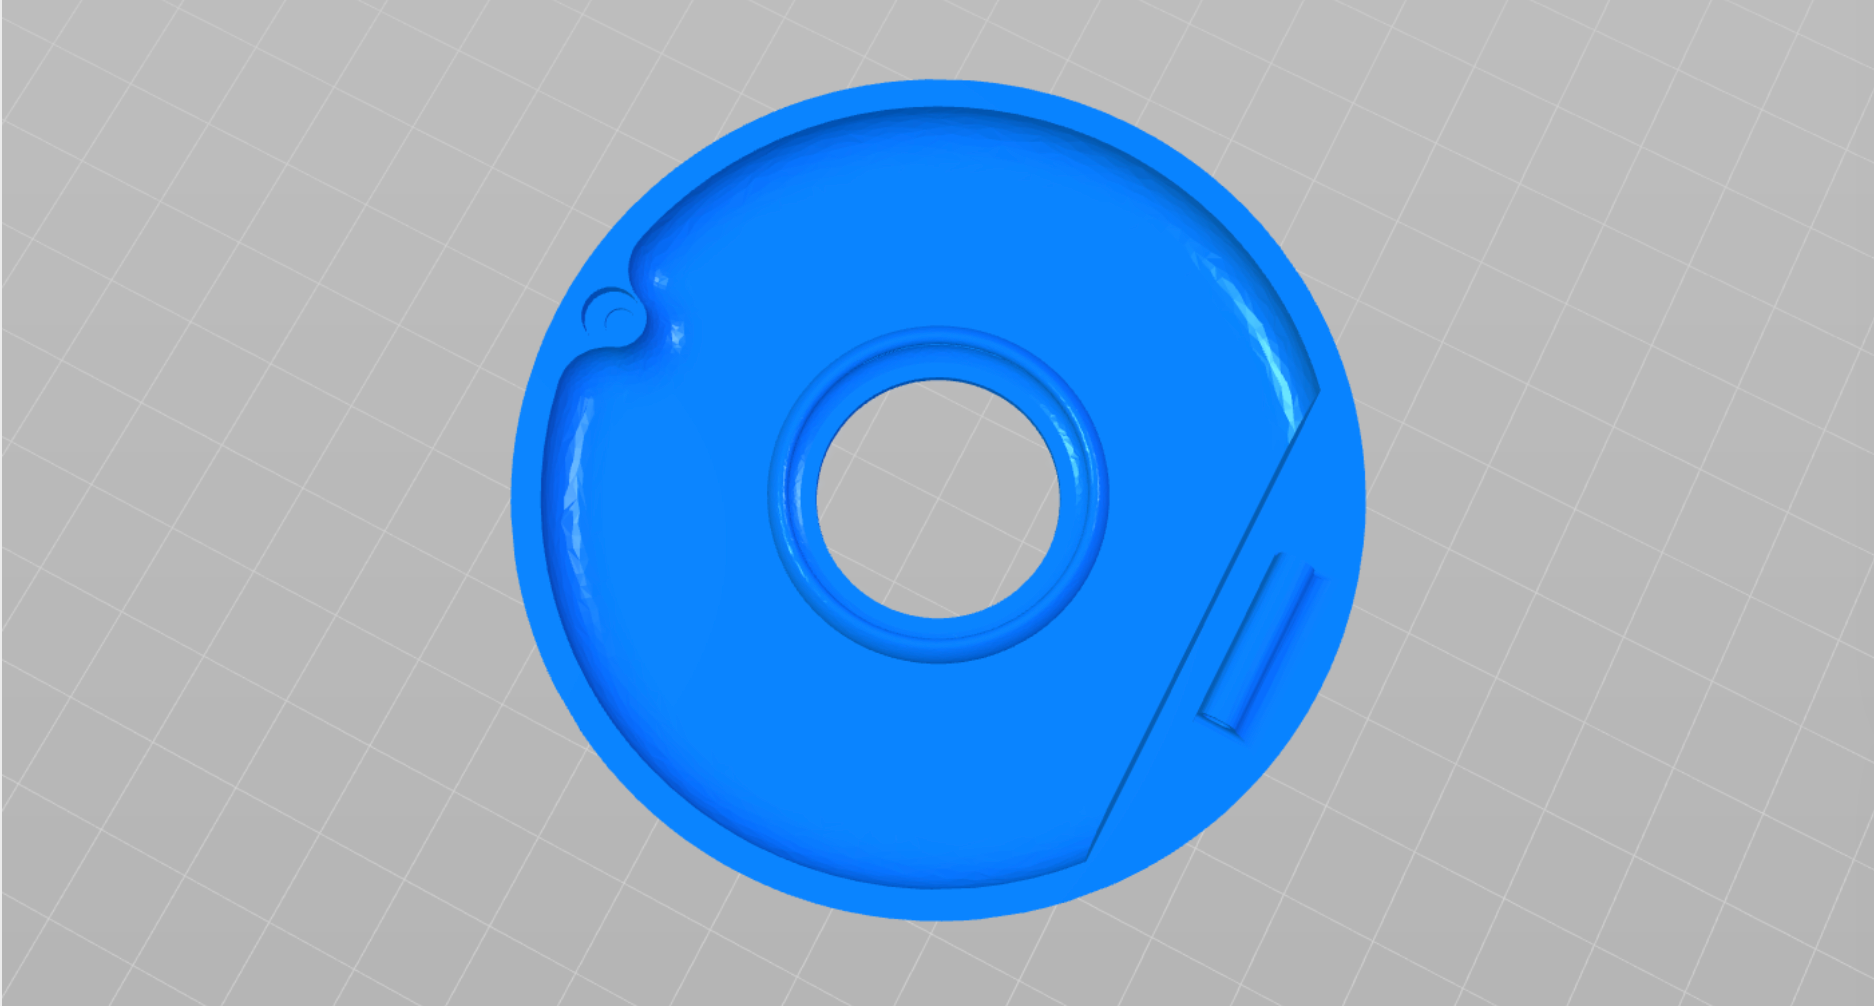 A 3D model of a doughnut shaped case in blue